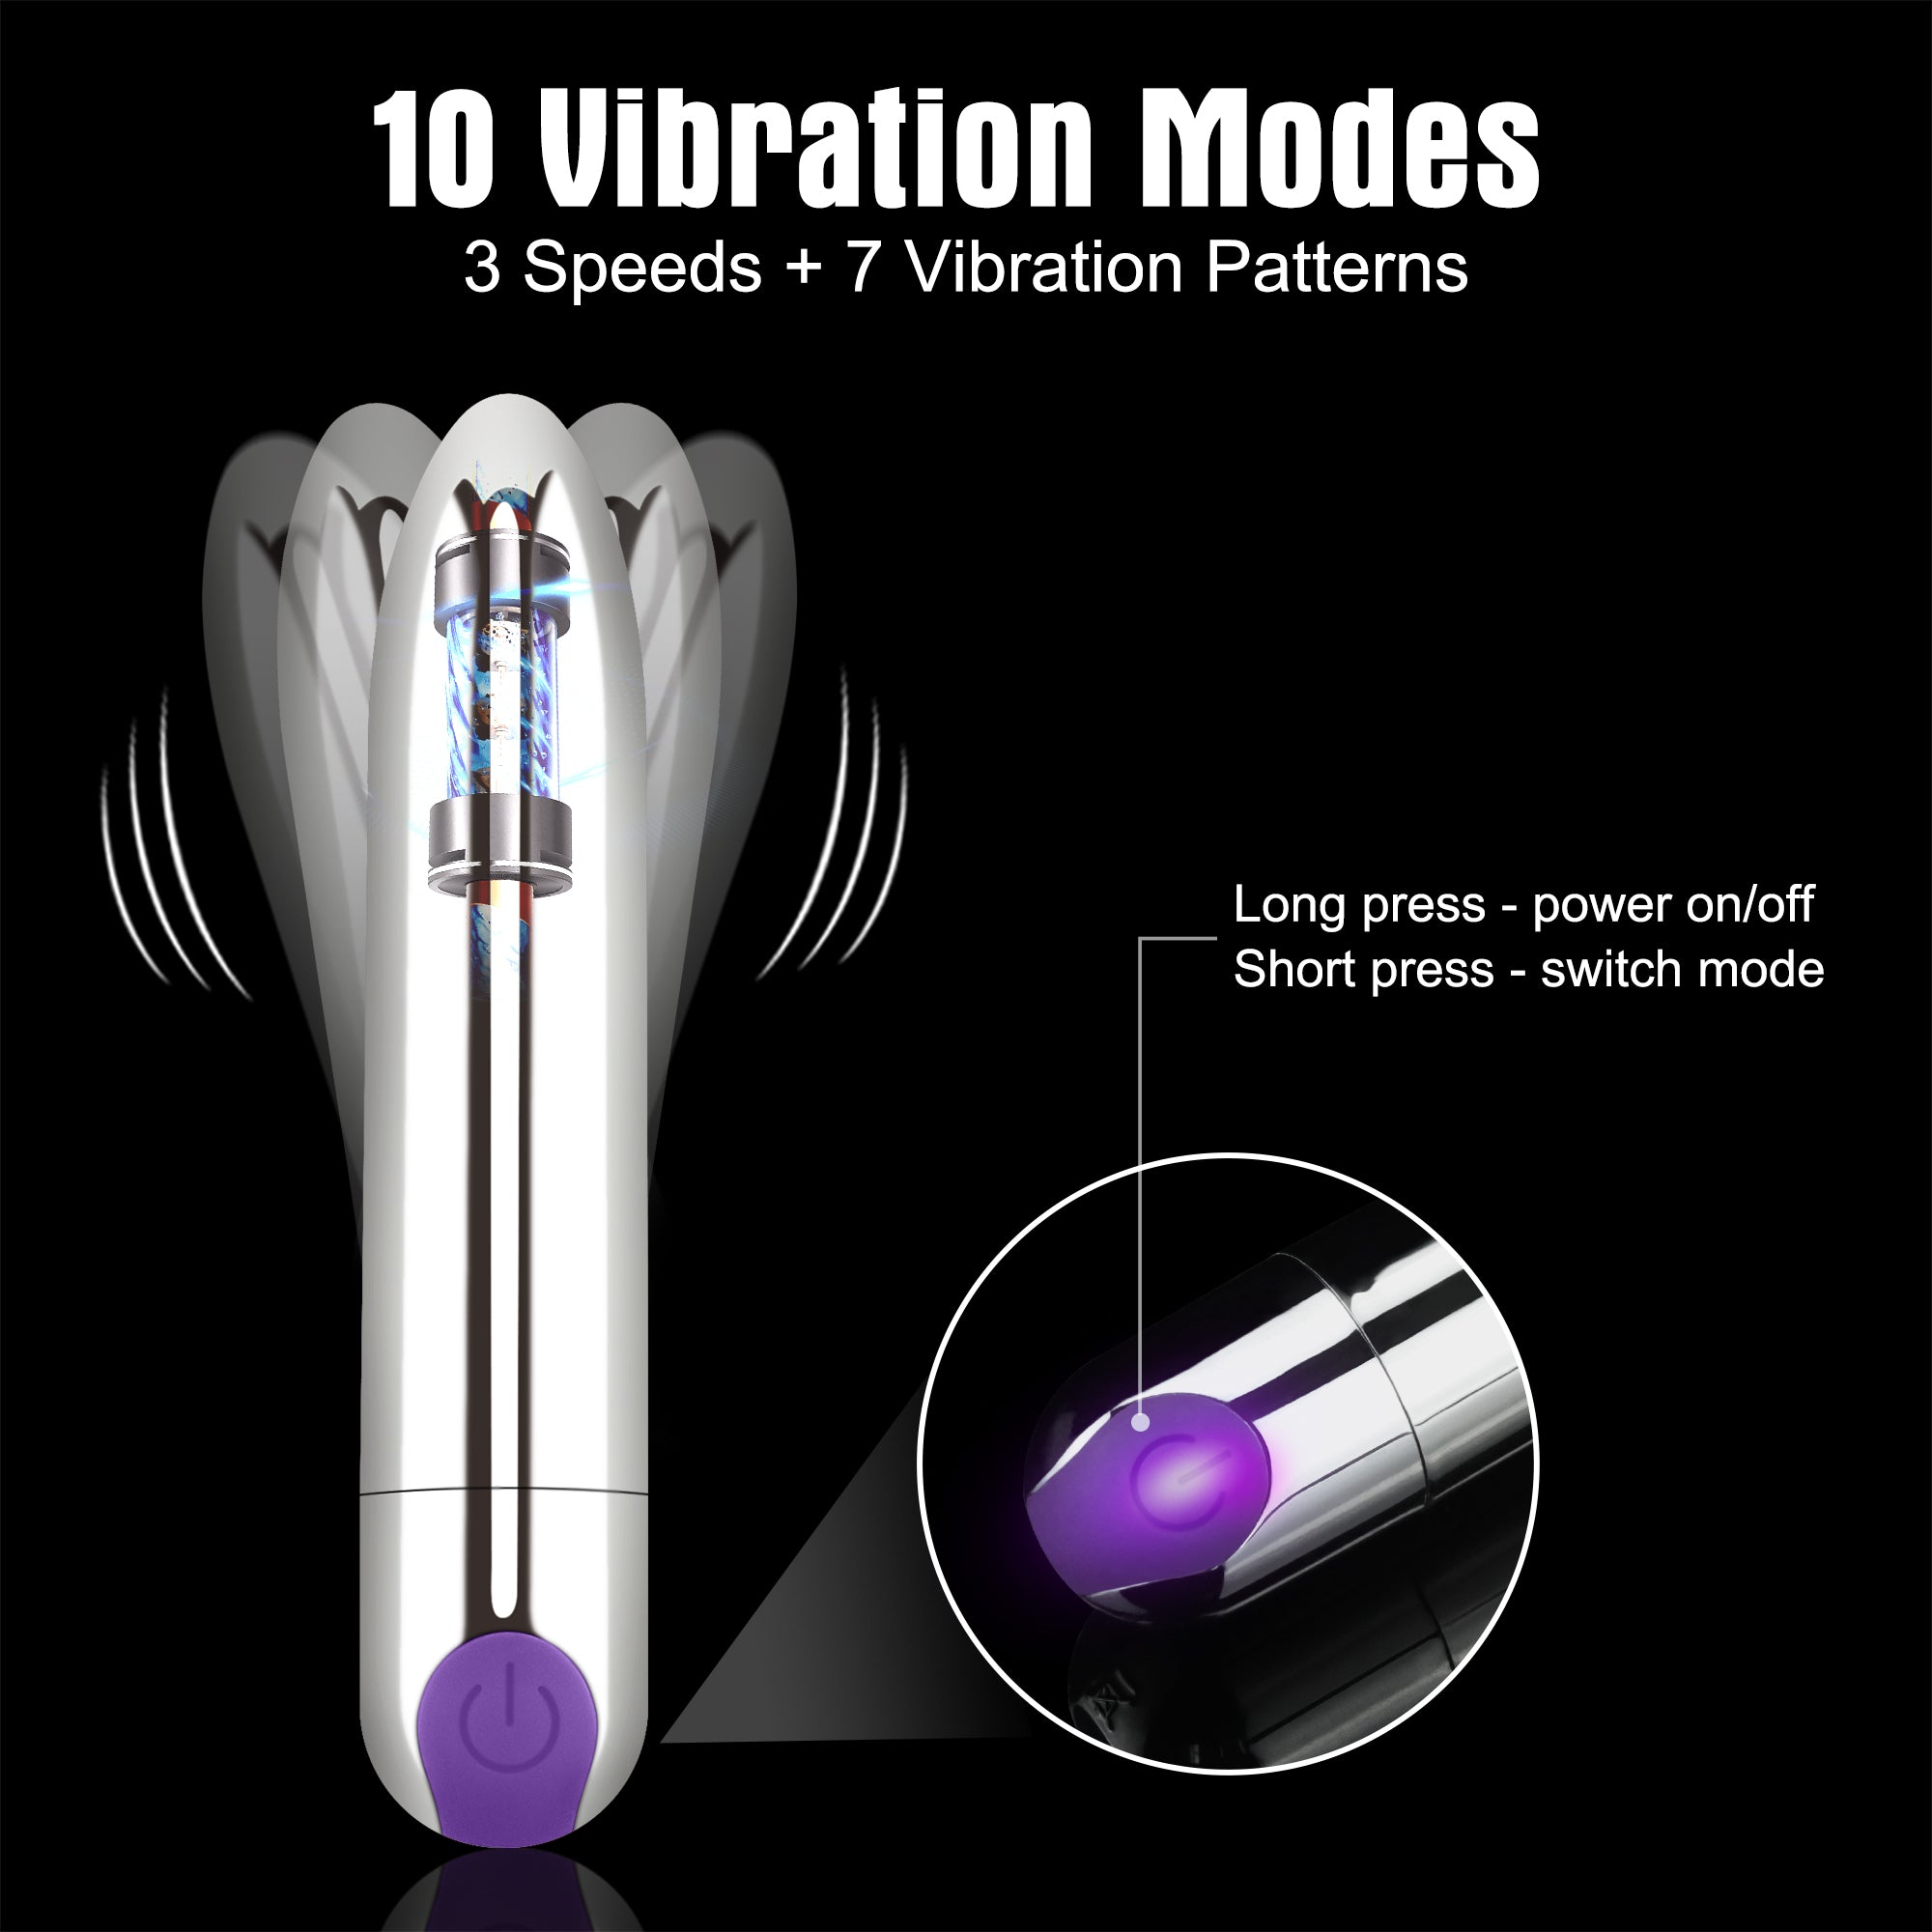 Bullet Vibrator-Finger Vibrator-G-spot Vibrator 3 in 1 Rechargeable Versatile Tickler for Women pleasure pic pic pic